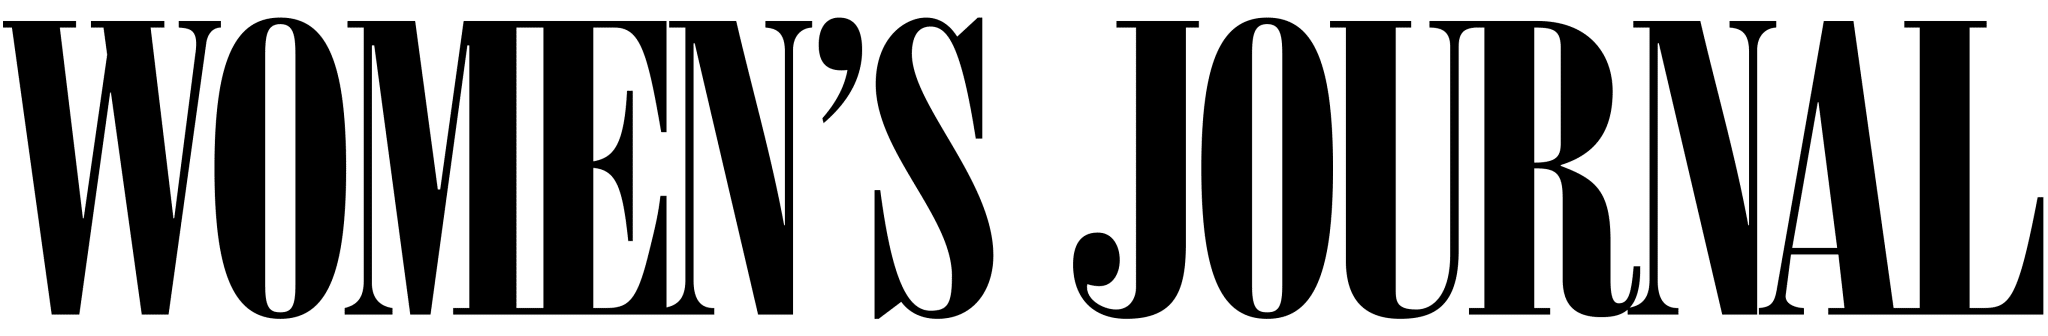 Womens-Journal-Logo-Black-Final